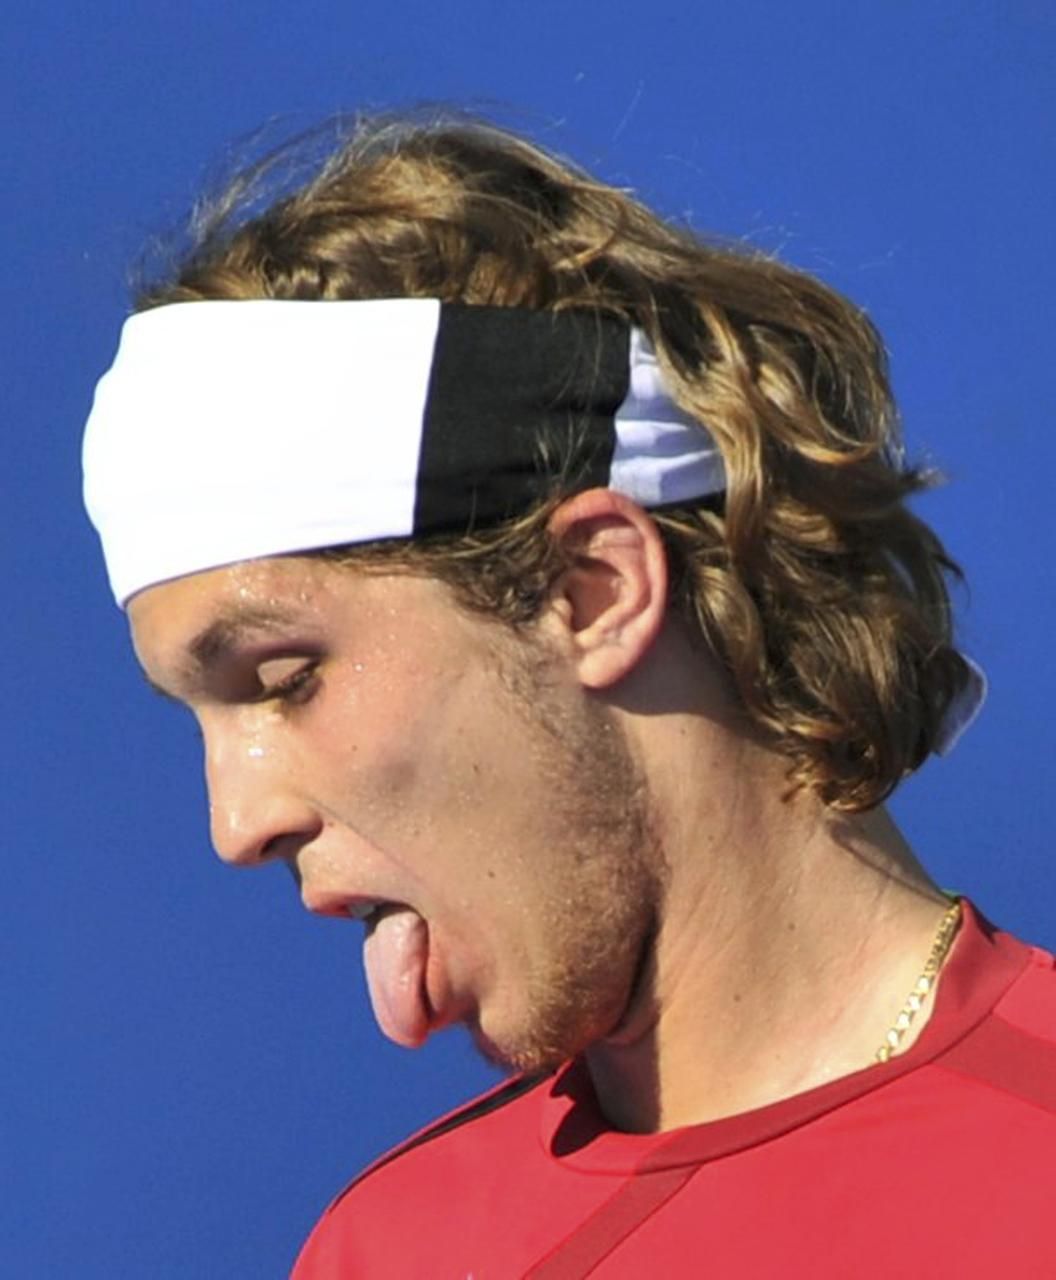 Australian Open 2012: Lukáš Lacko